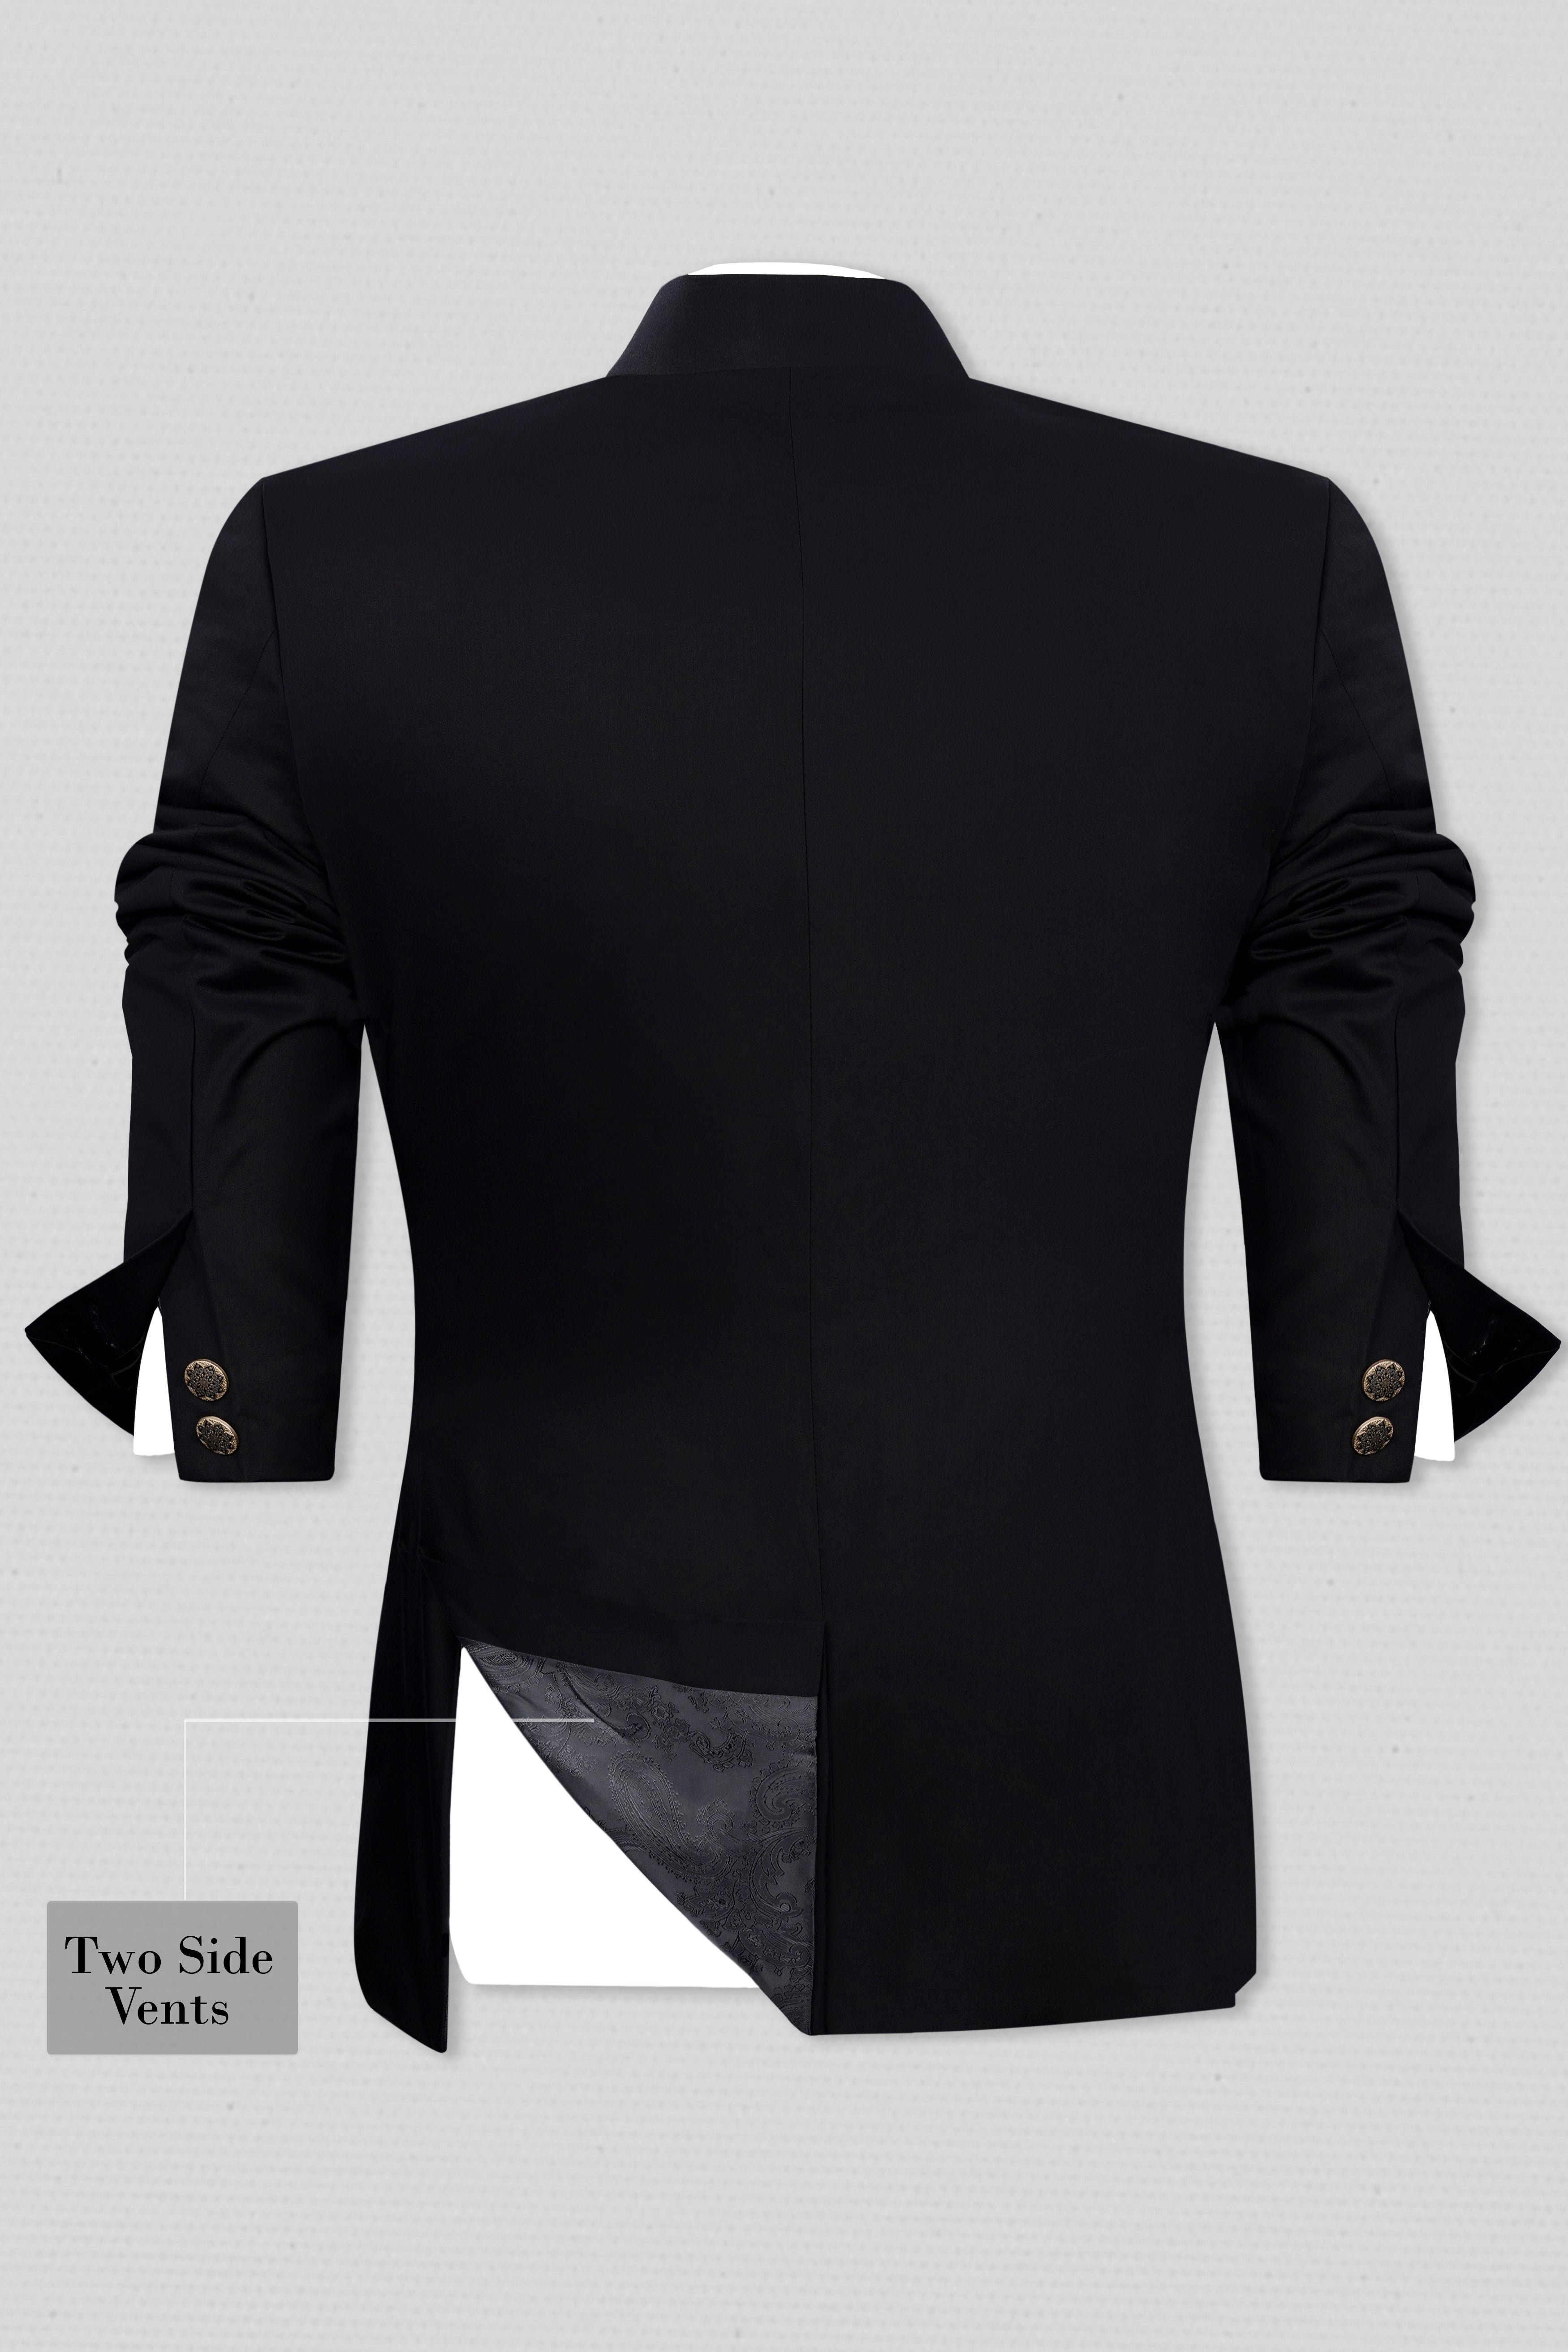 Jade Black Wool Rich Bandhgala Designer Suit ST2979-D174-36, ST2979-D174-38, ST2979-D174-40, ST2979-D174-42, ST2979-D174-44, ST2979-D174-46, ST2979-D174-48, ST2979-D174-50, ST2979-D174-52, ST2979-D174-54, ST2979-D174-56, ST2979-D174-58, ST2979-D174-60